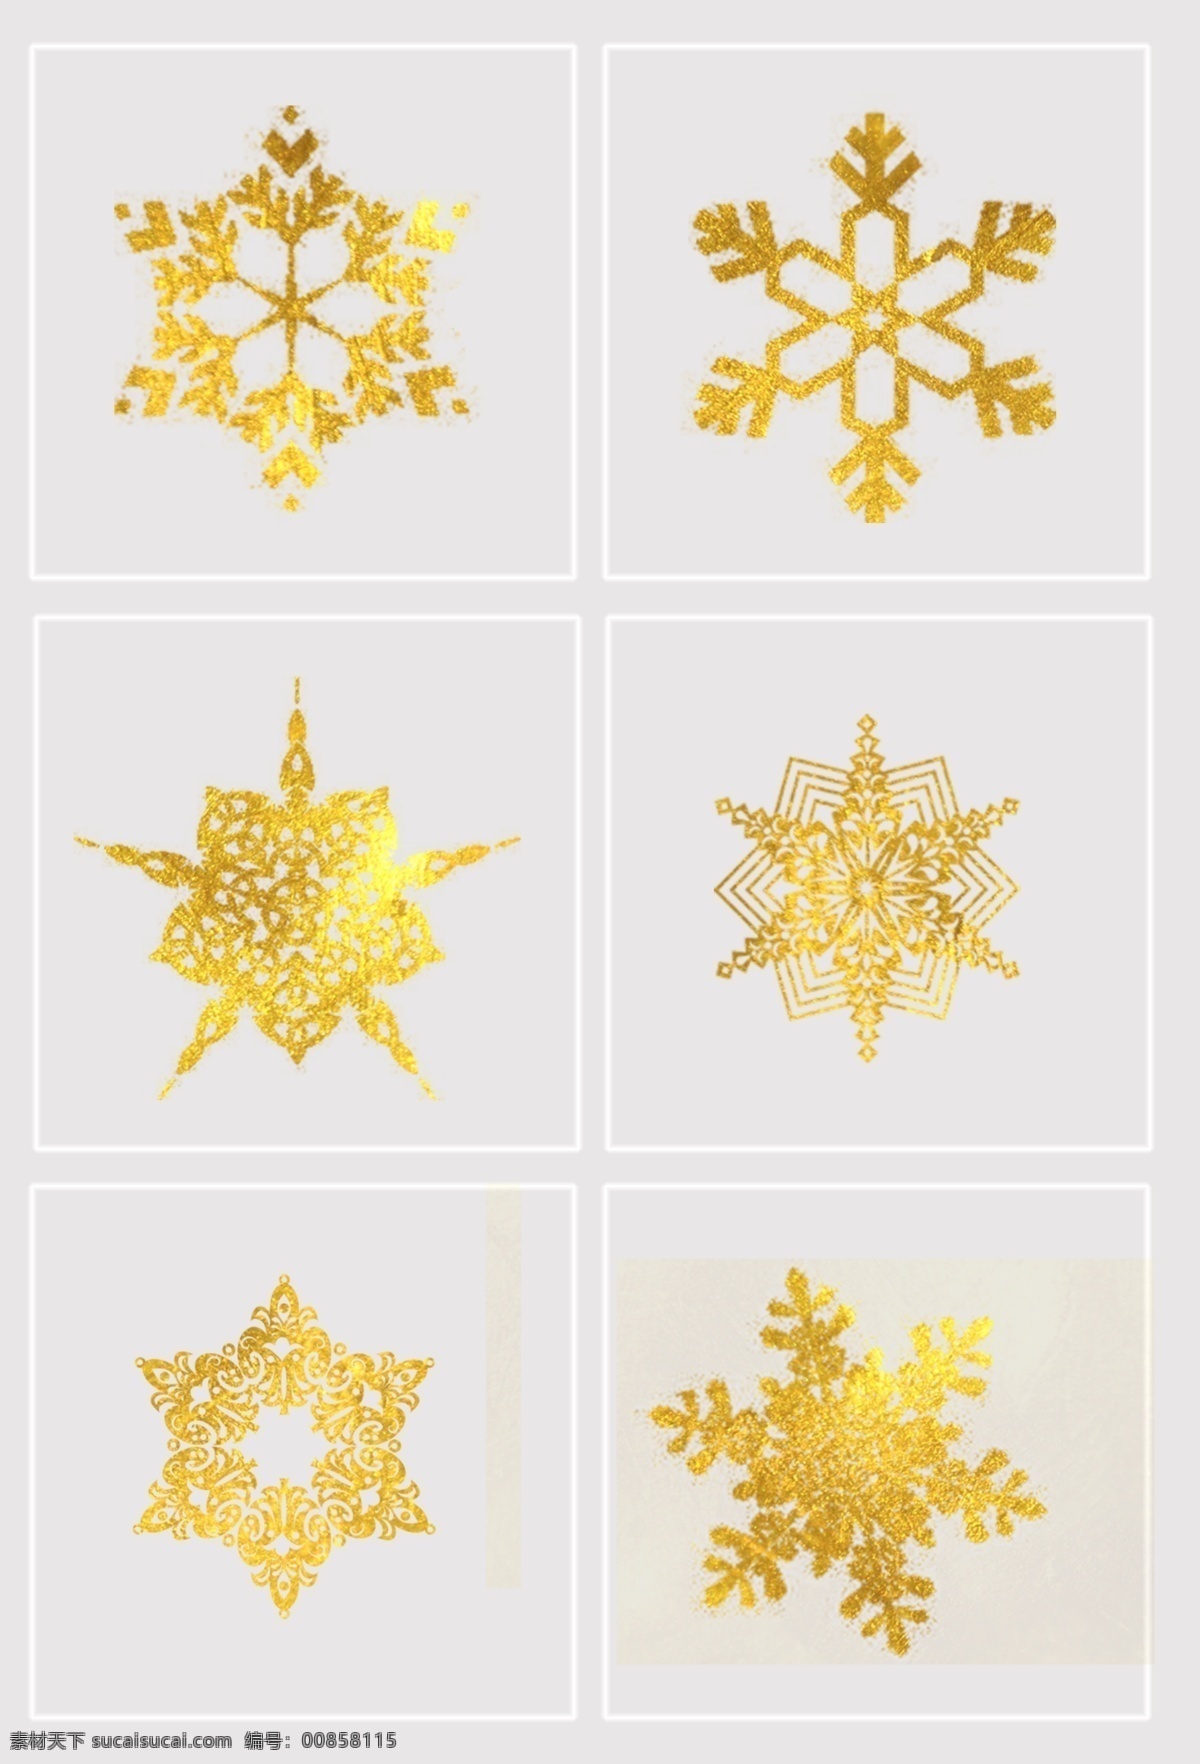 奢华 美感 金色 雪花 元素 大气 雪花素材 装饰素材 免扣素材